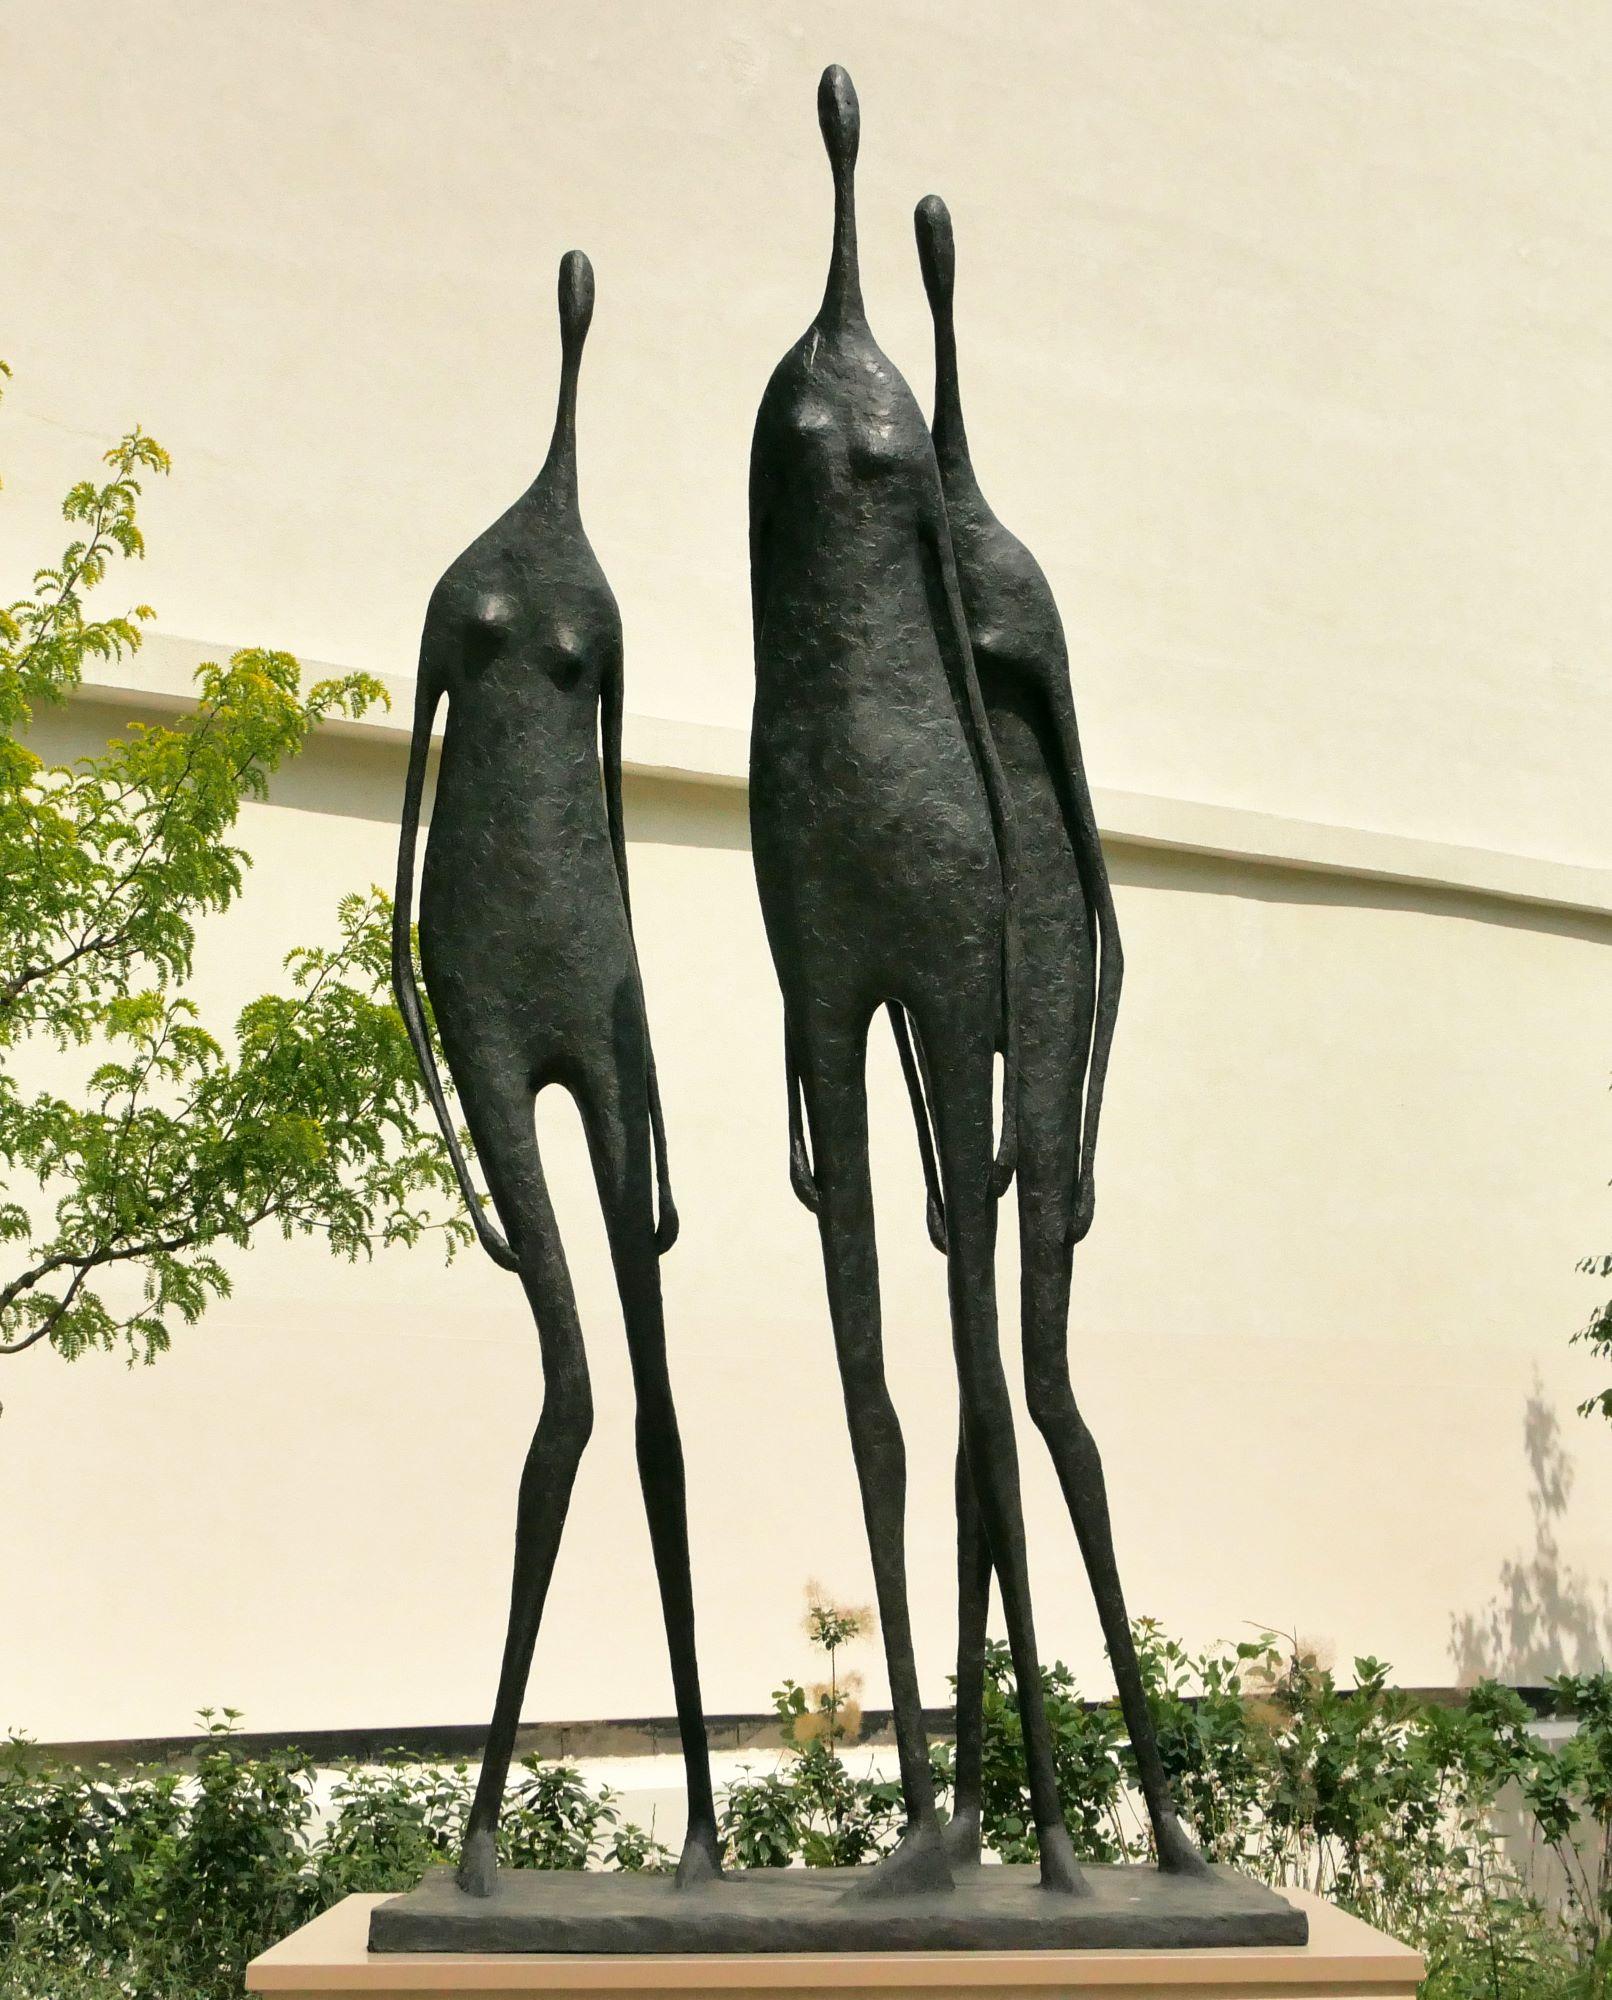 3 Monumental Standing Figures est une sculpture en bronze de l'artiste contemporain français Pierre Yermia, dont les dimensions sont de 320 × 150 × 130 cm (126 × 59.1 × 51.2 in).  
La sculpture est signée et numérotée, elle fait partie d'une édition